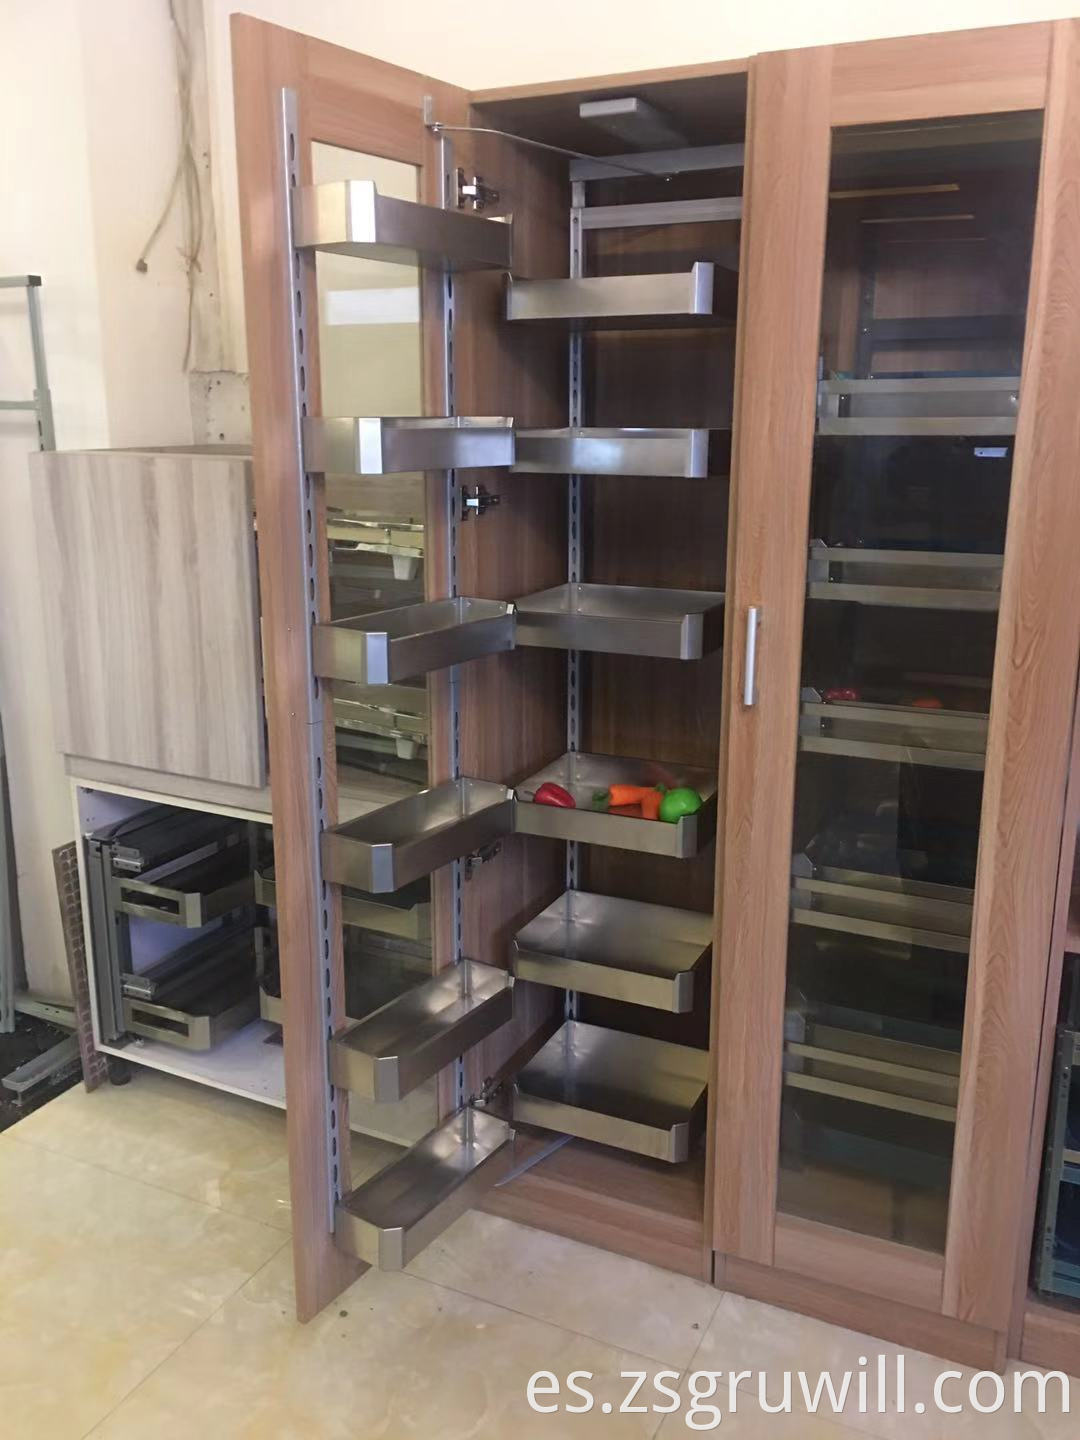 Cabinete de cocina suave cerrado unidades de despensa de despensa de larder de 400 mm de ancho